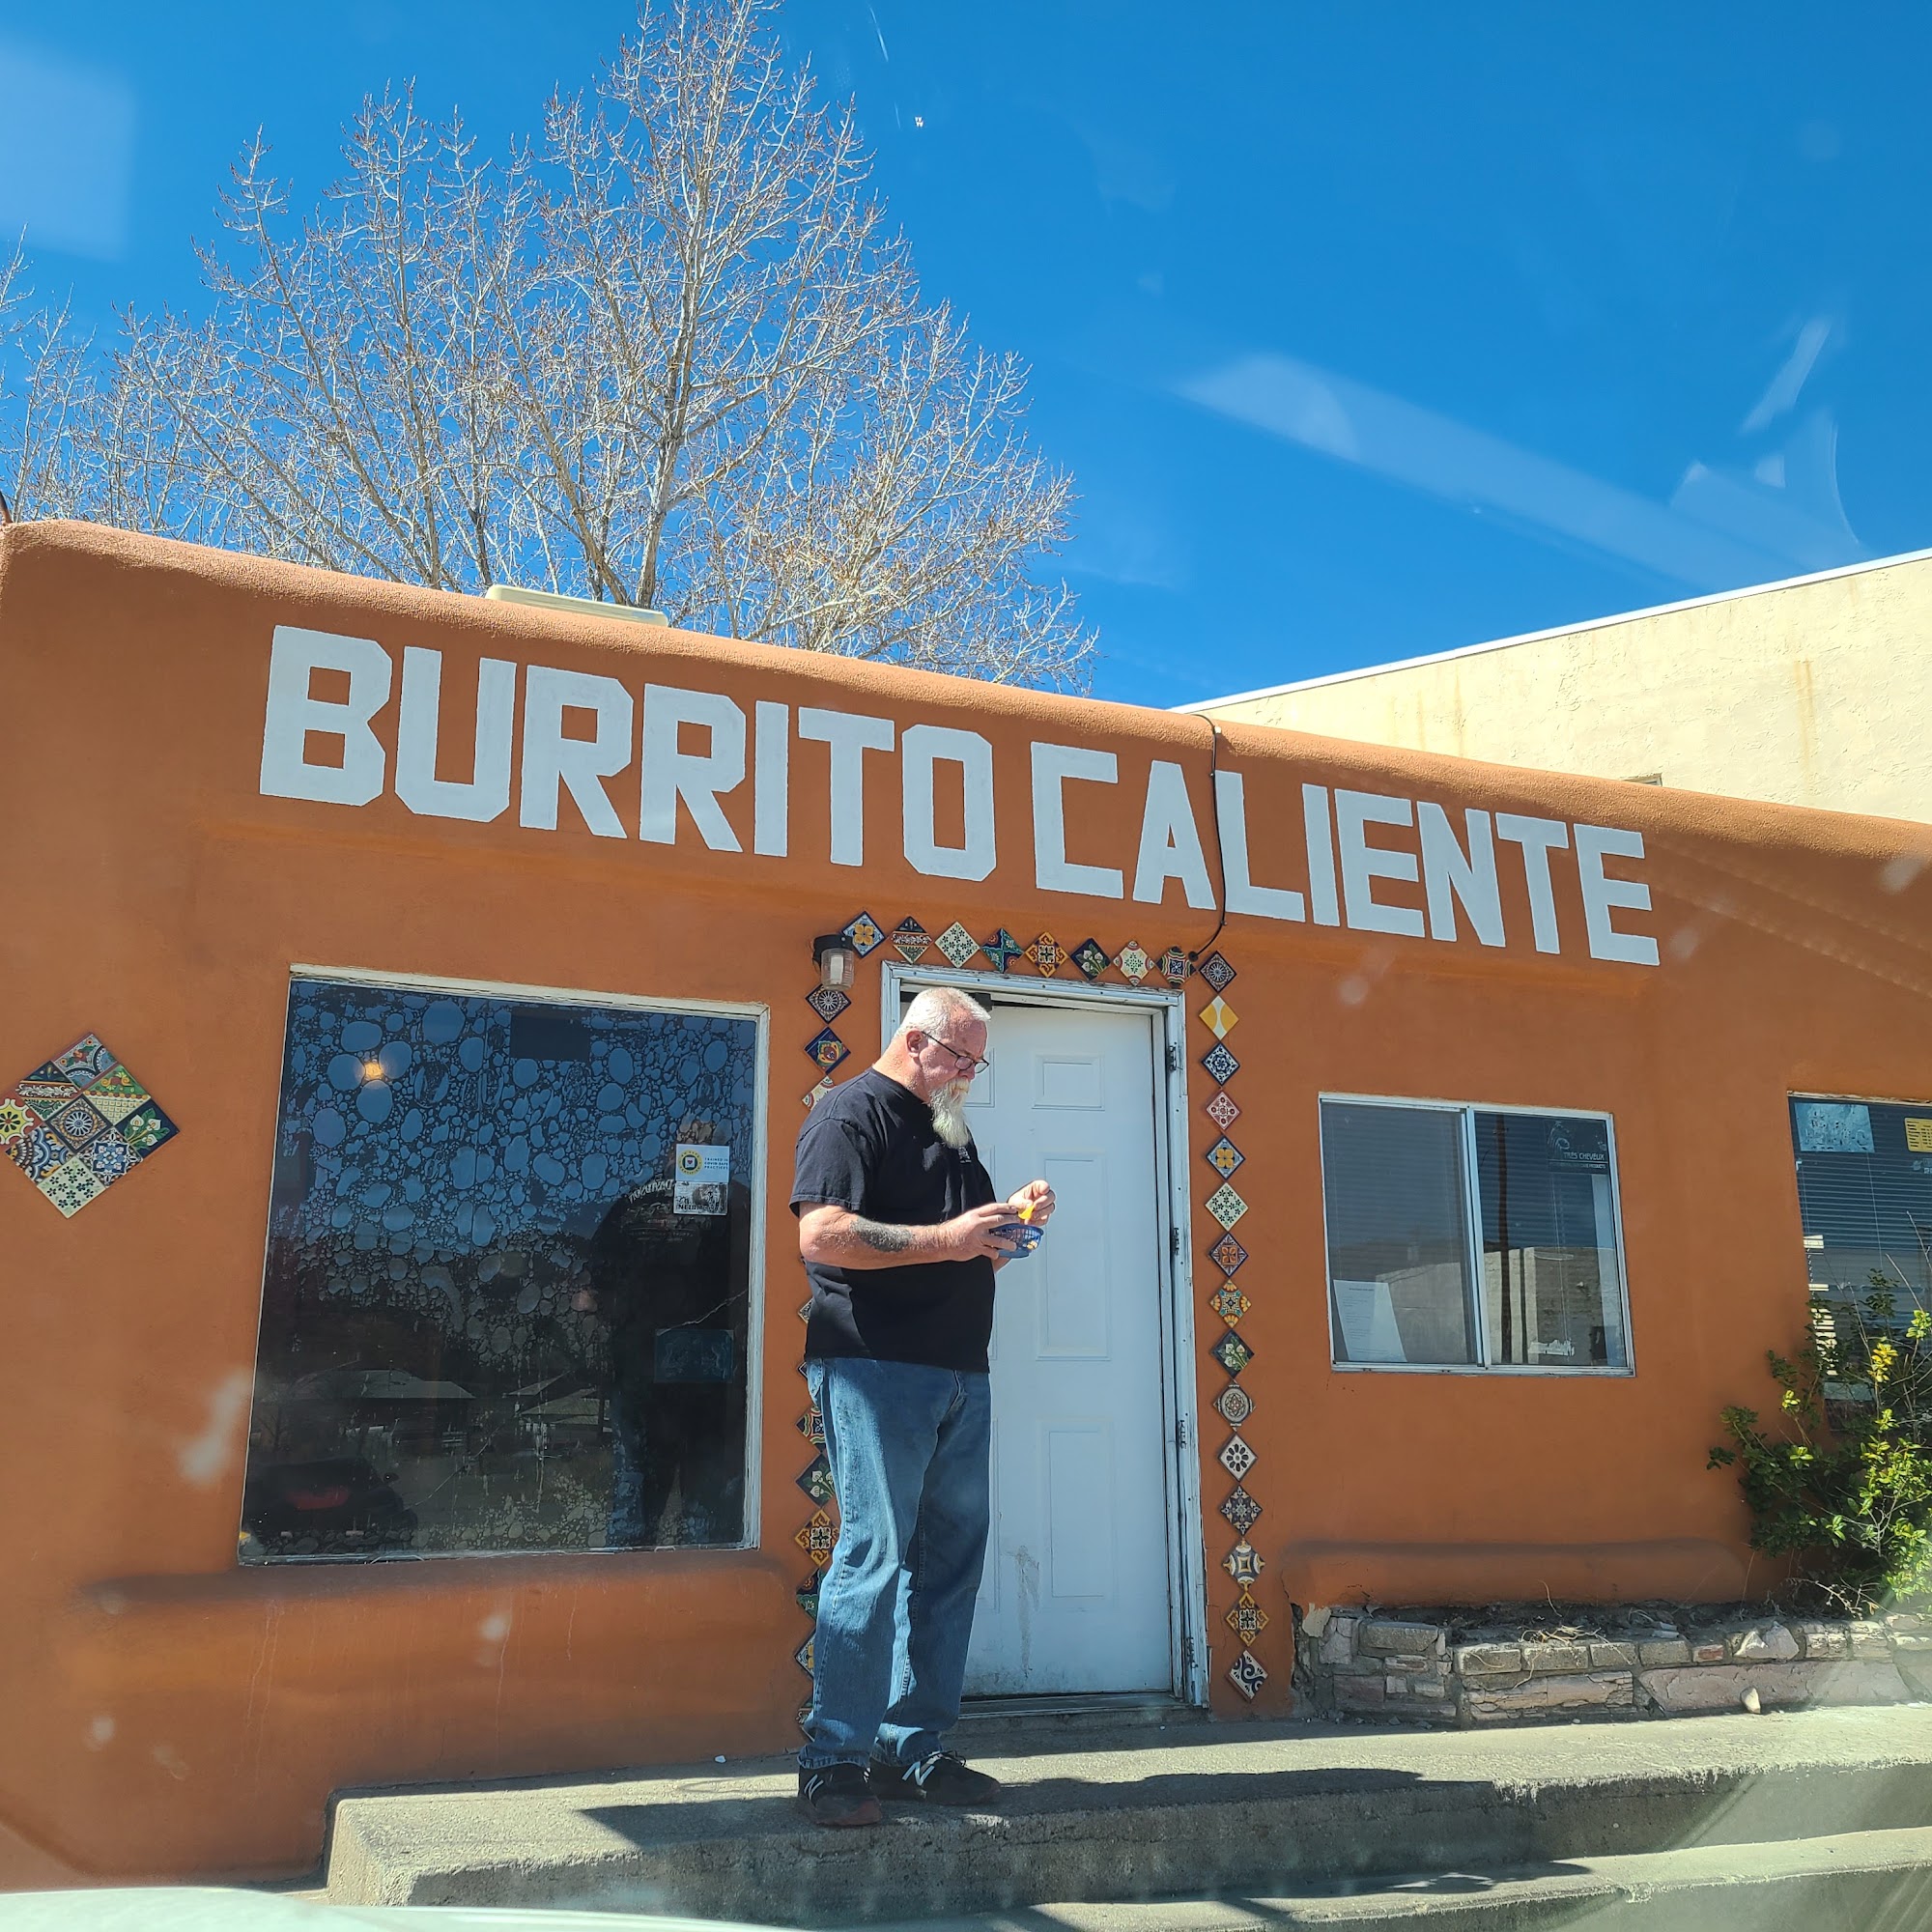 El Burrito Caliente